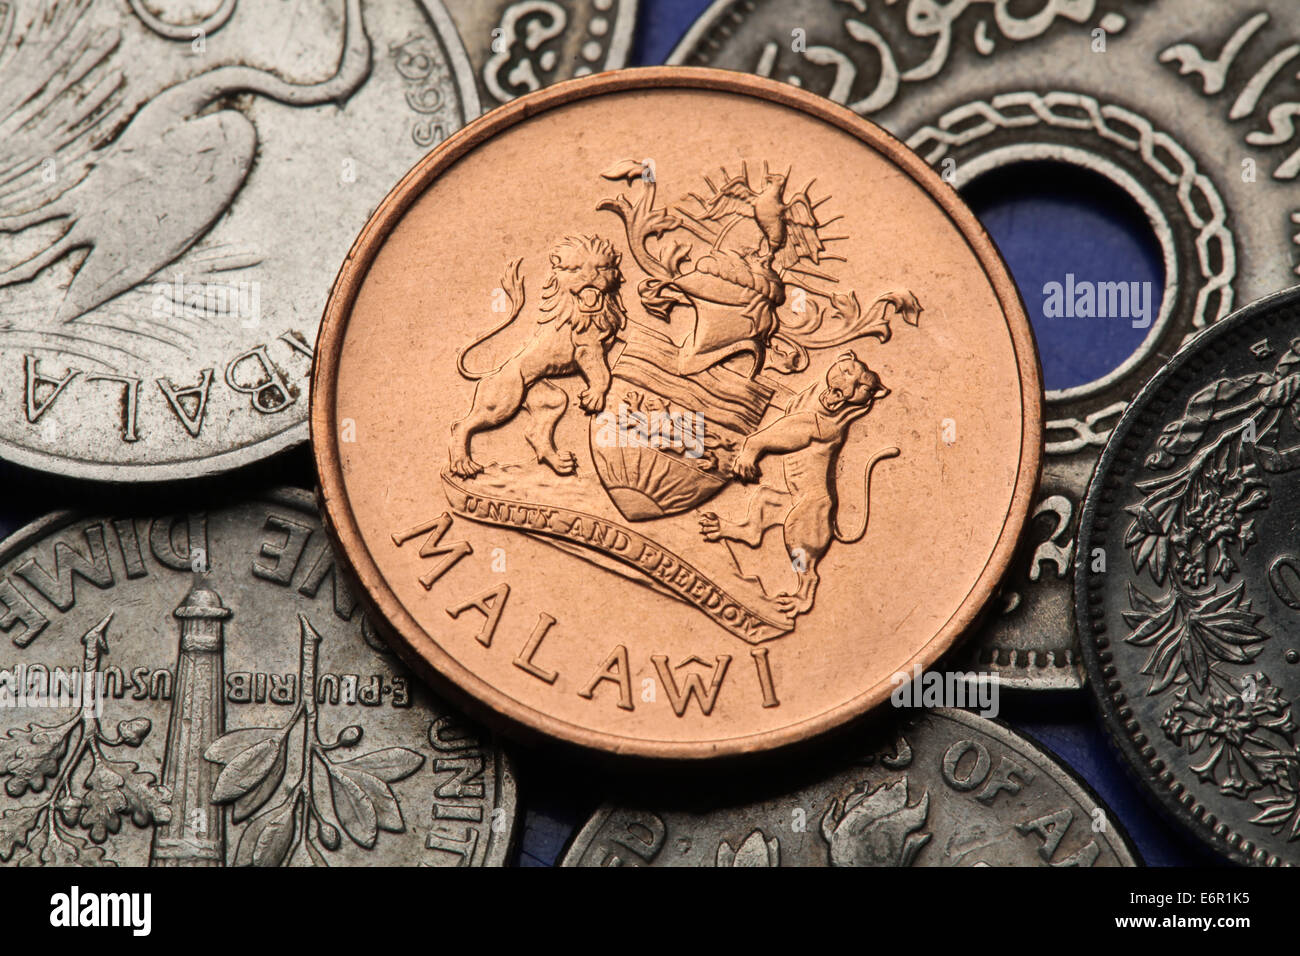 Münzen von Malawi. Malawische Wappen in der malawischen zwei Tambala Münze dargestellt. Stockfoto